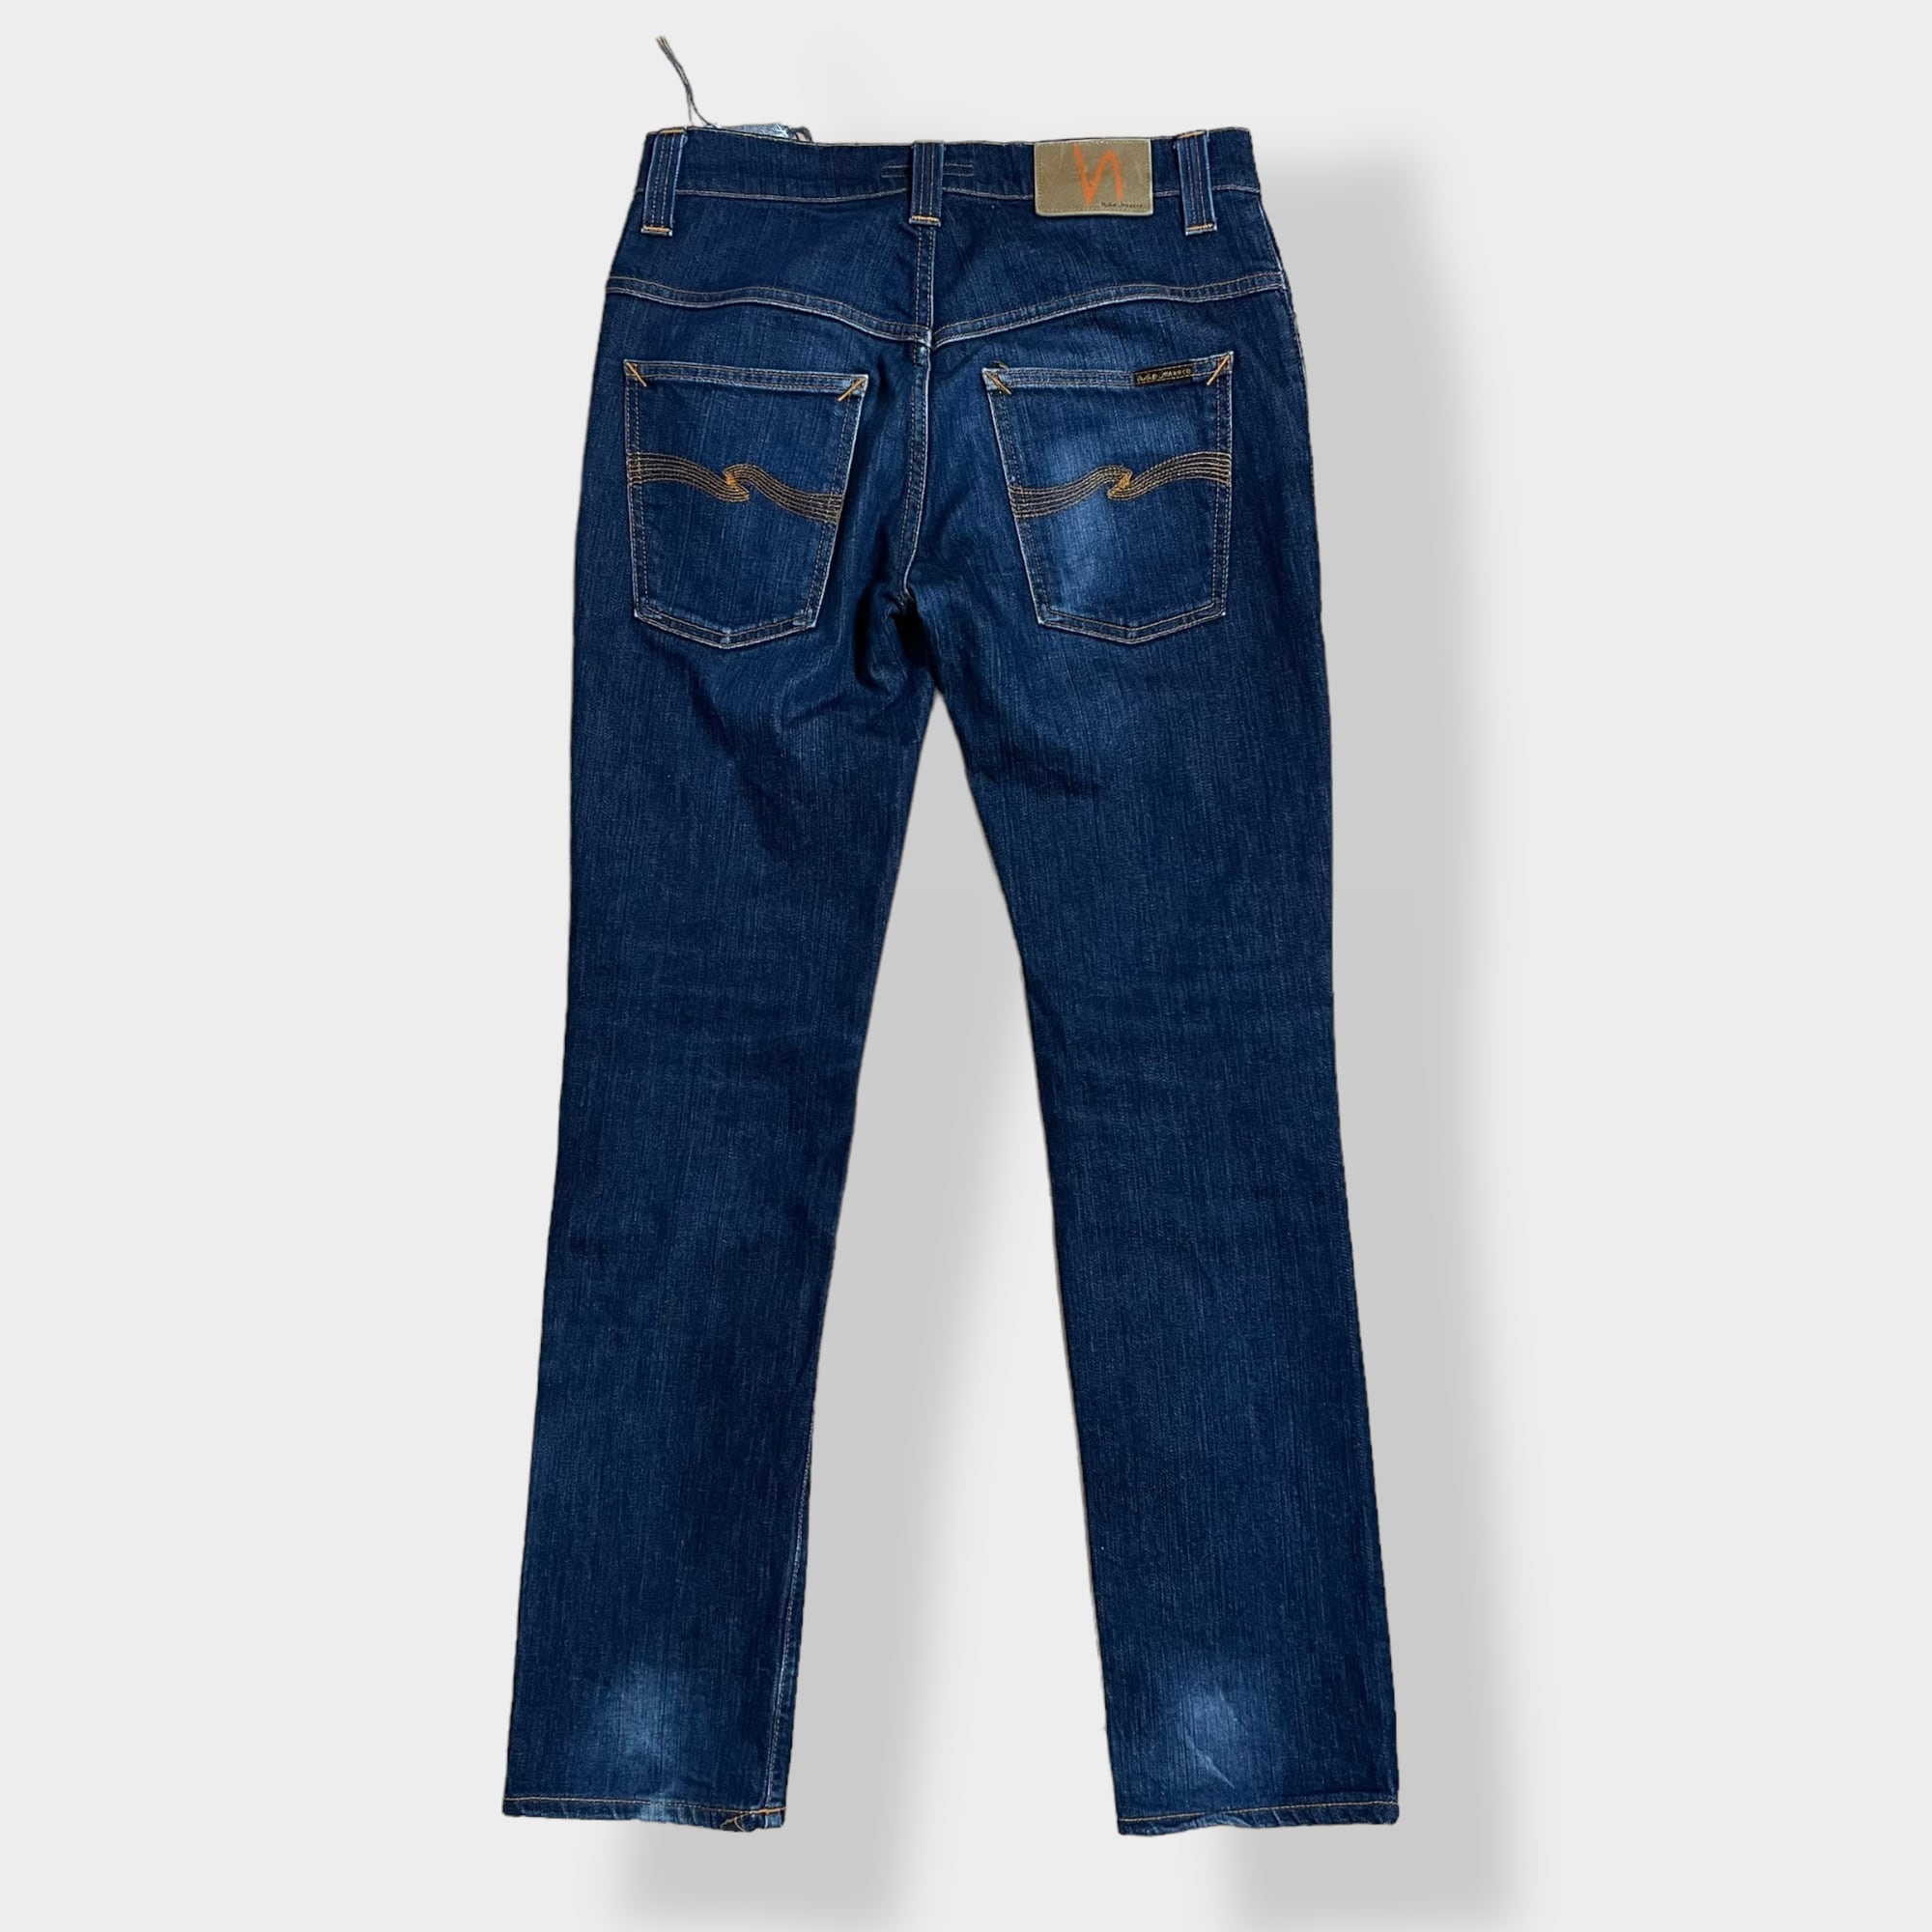 Nudie Jeans デニムパンツ W32 インディゴ 濃紺